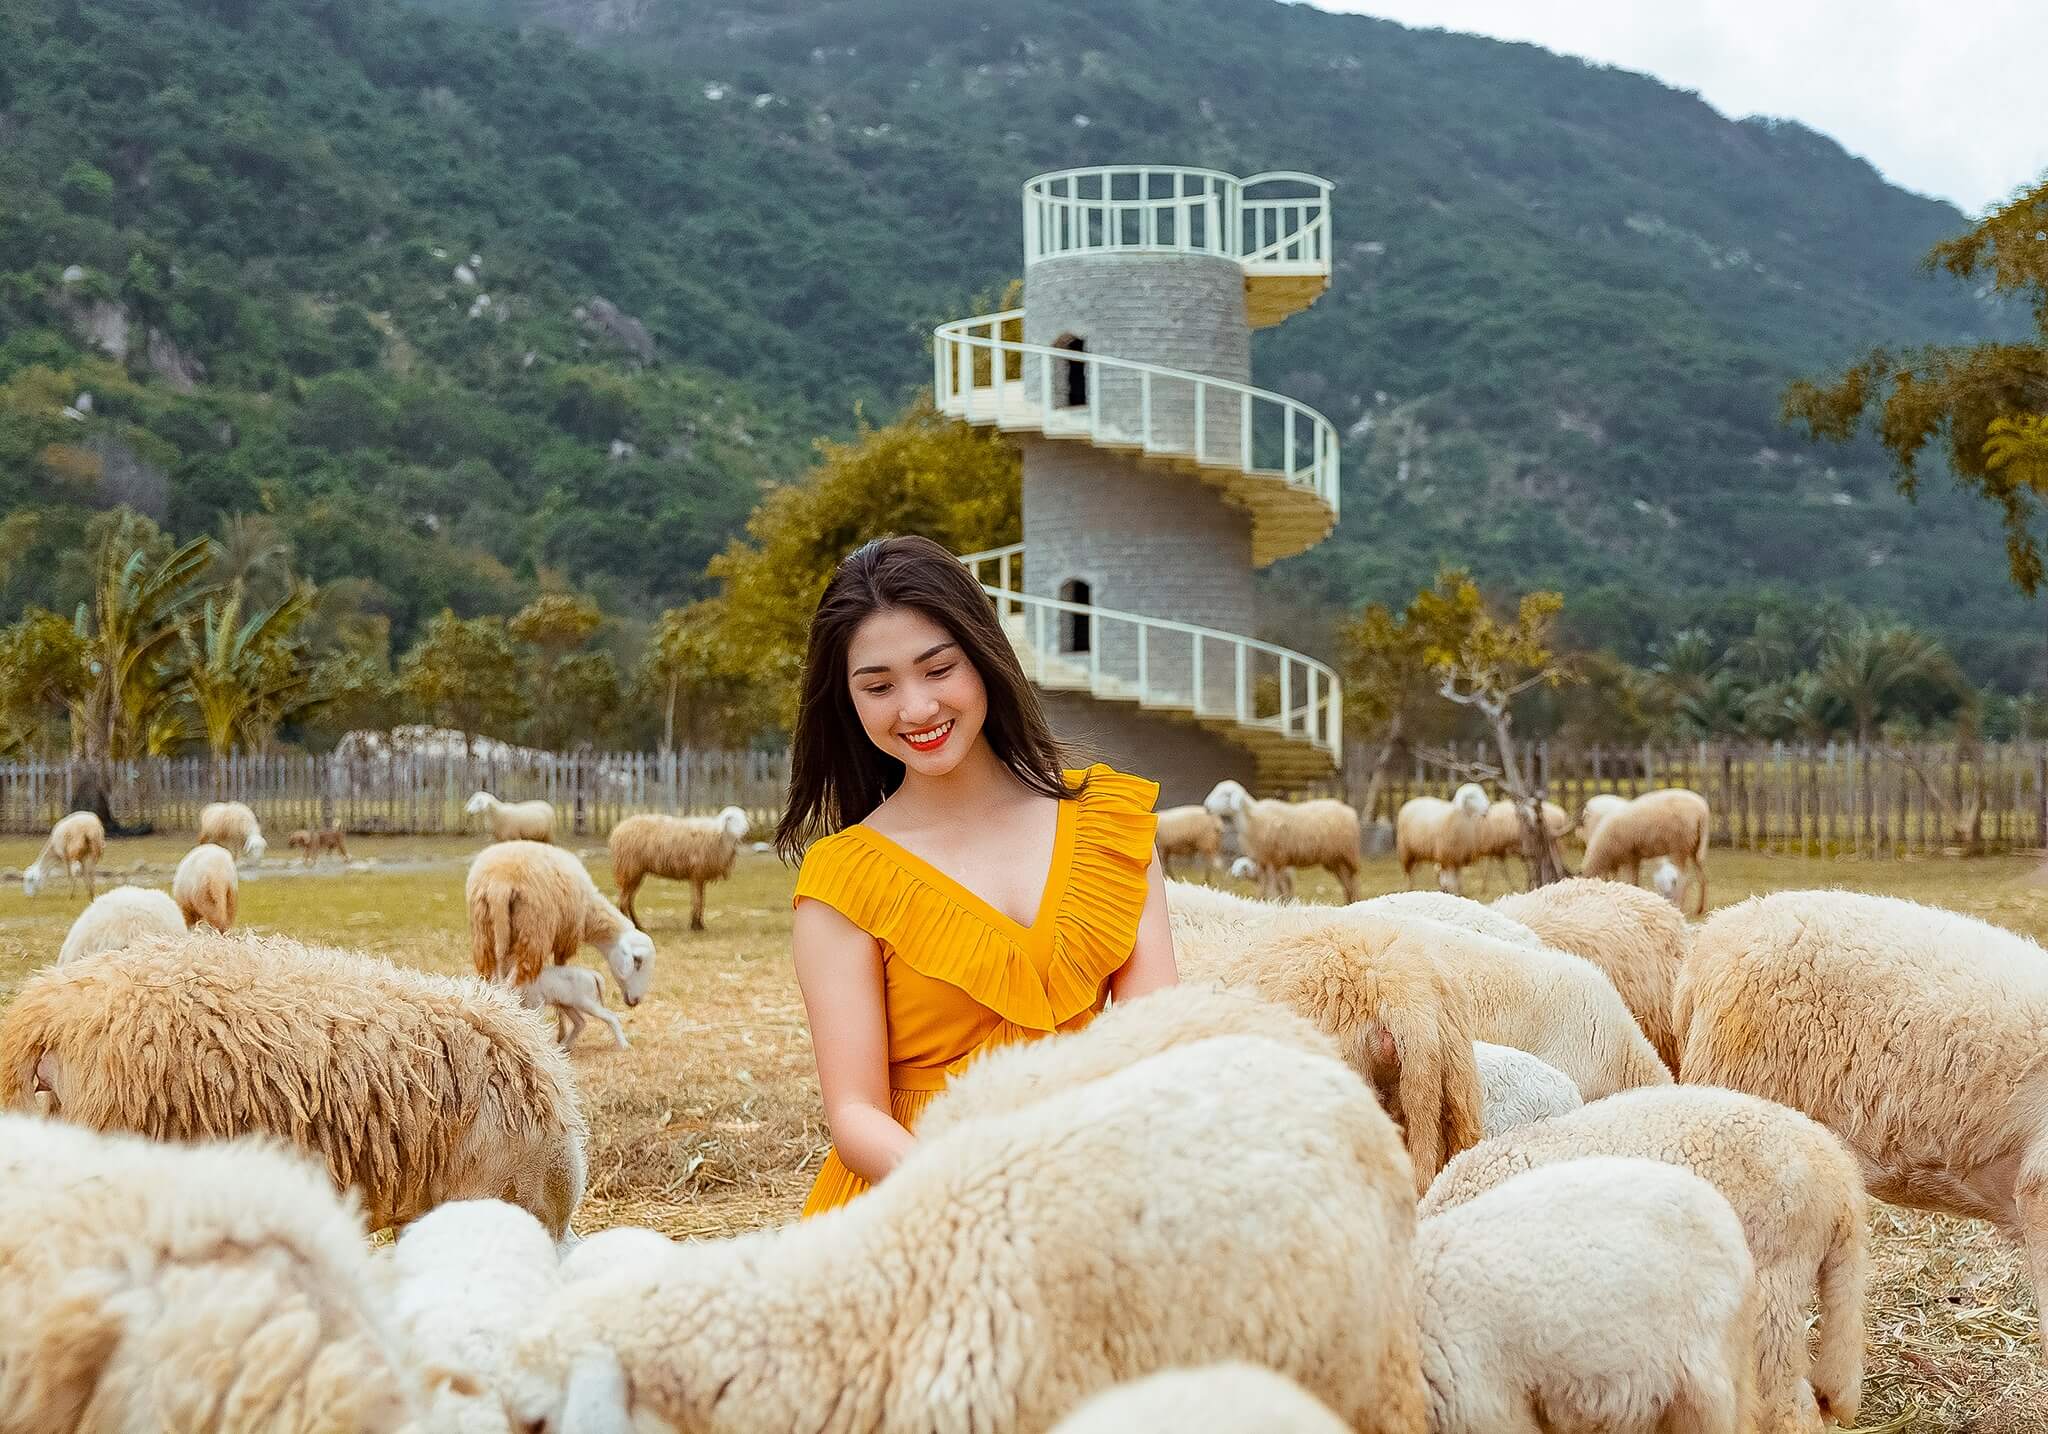 Đồng cừu Suối Tiên sẽ là một nơi ít người hơn, và bạn sẽ có cơ hội vui chơi trên một thảo nguyên rộng lớn